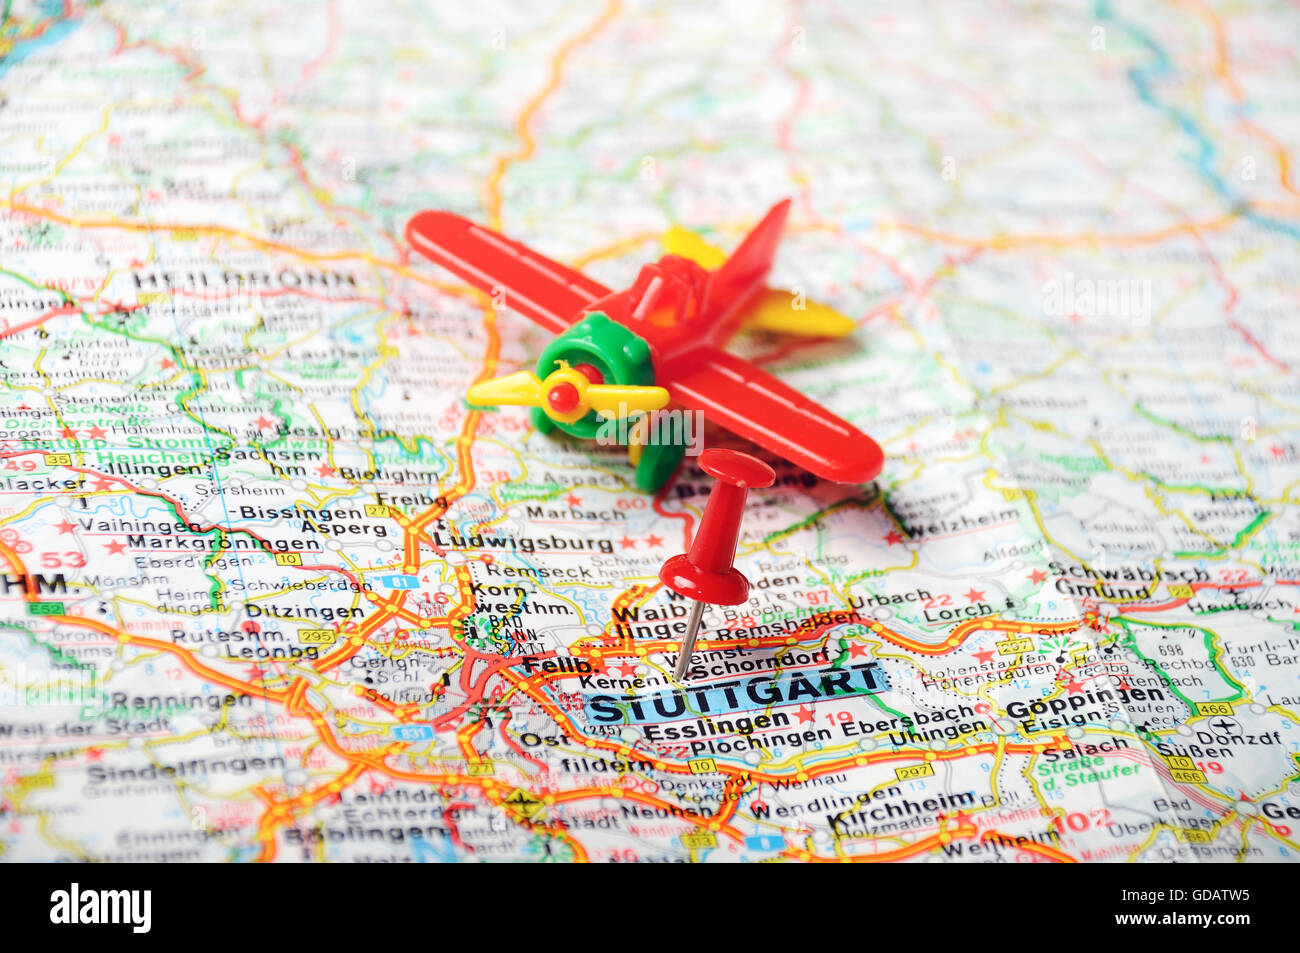 Cerca de Stuttgart mapa con clavijas roja y avión - concepto de viaje Foto de stock